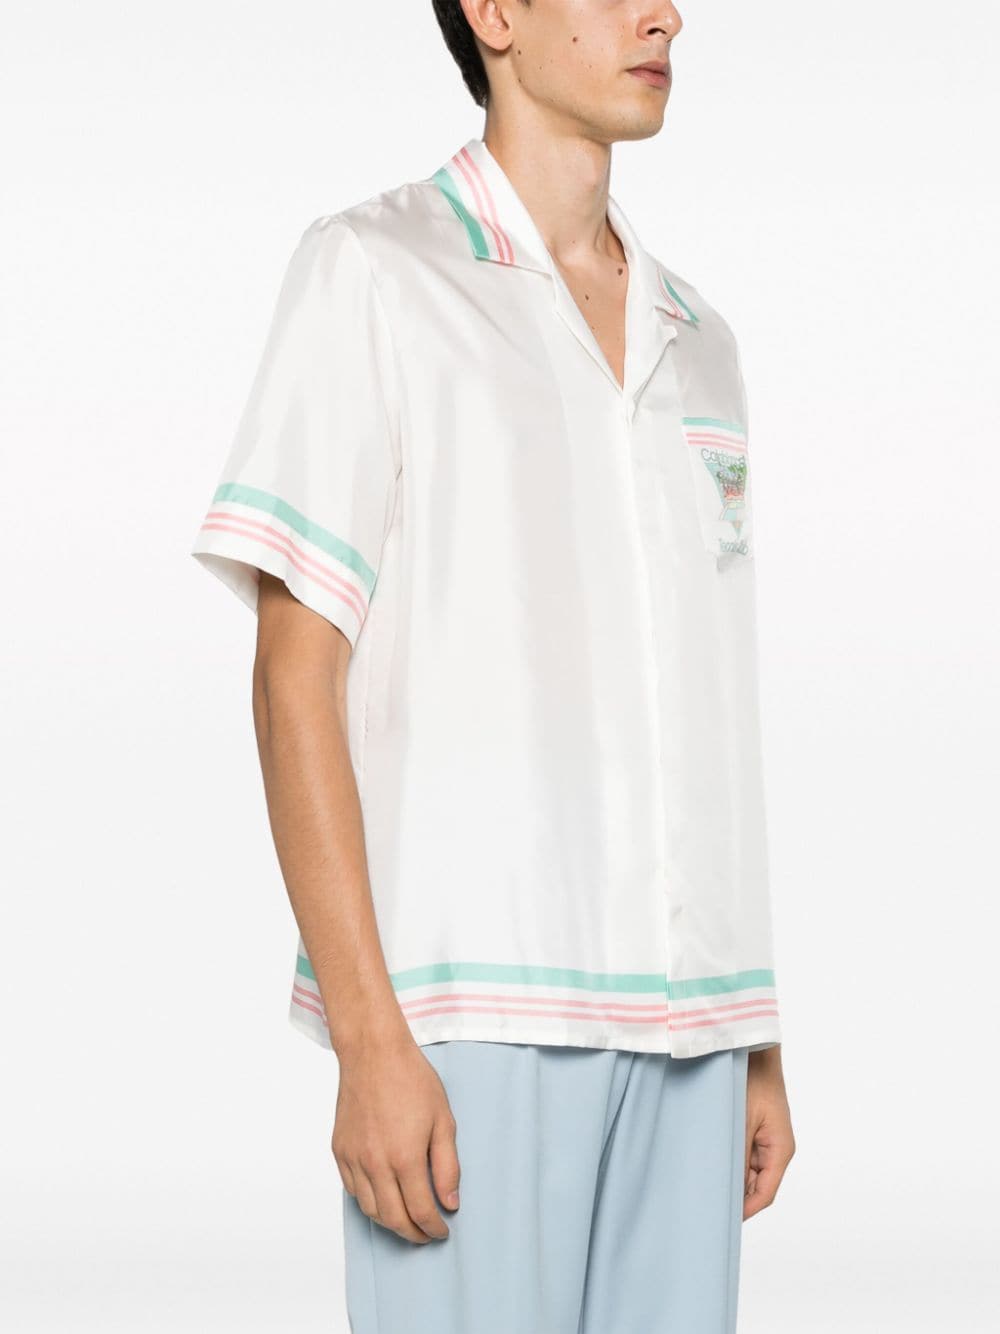 Shop Casablanca Tennis Club Icon Silk Shirt In White